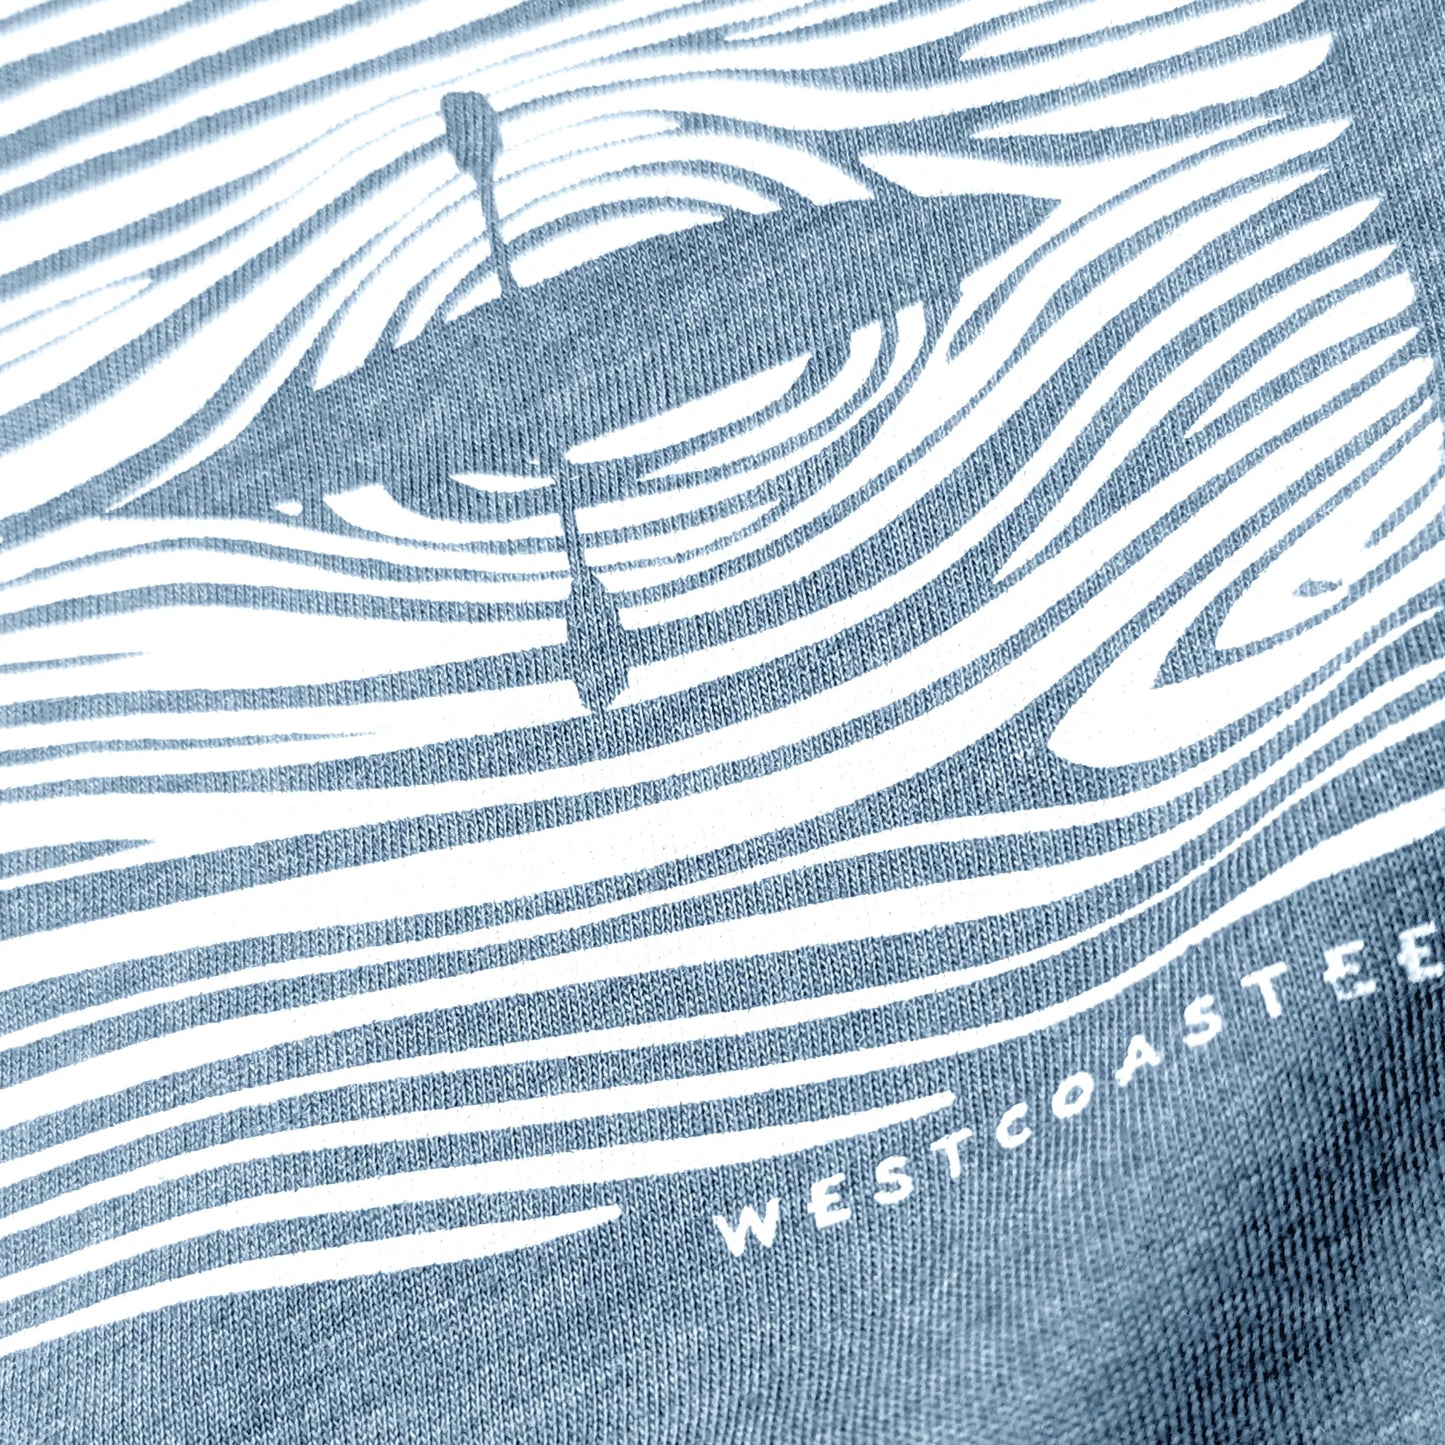 Westcoastees - Adult Unisex Wood Grain Kayaks T-shirt